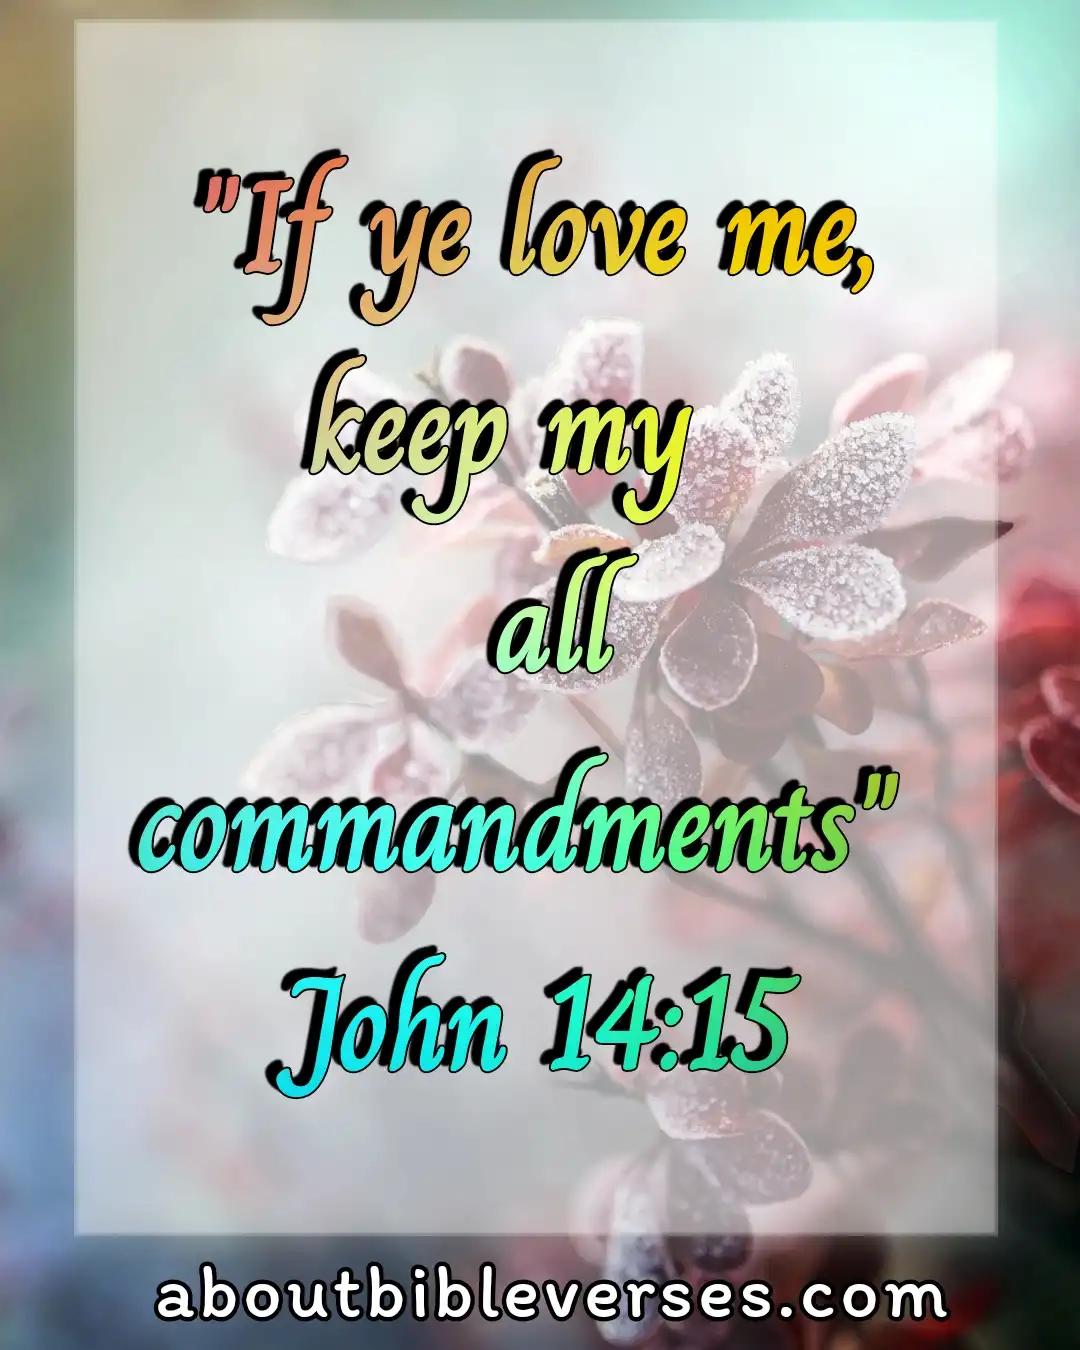 Today bible verse(John 14:15)